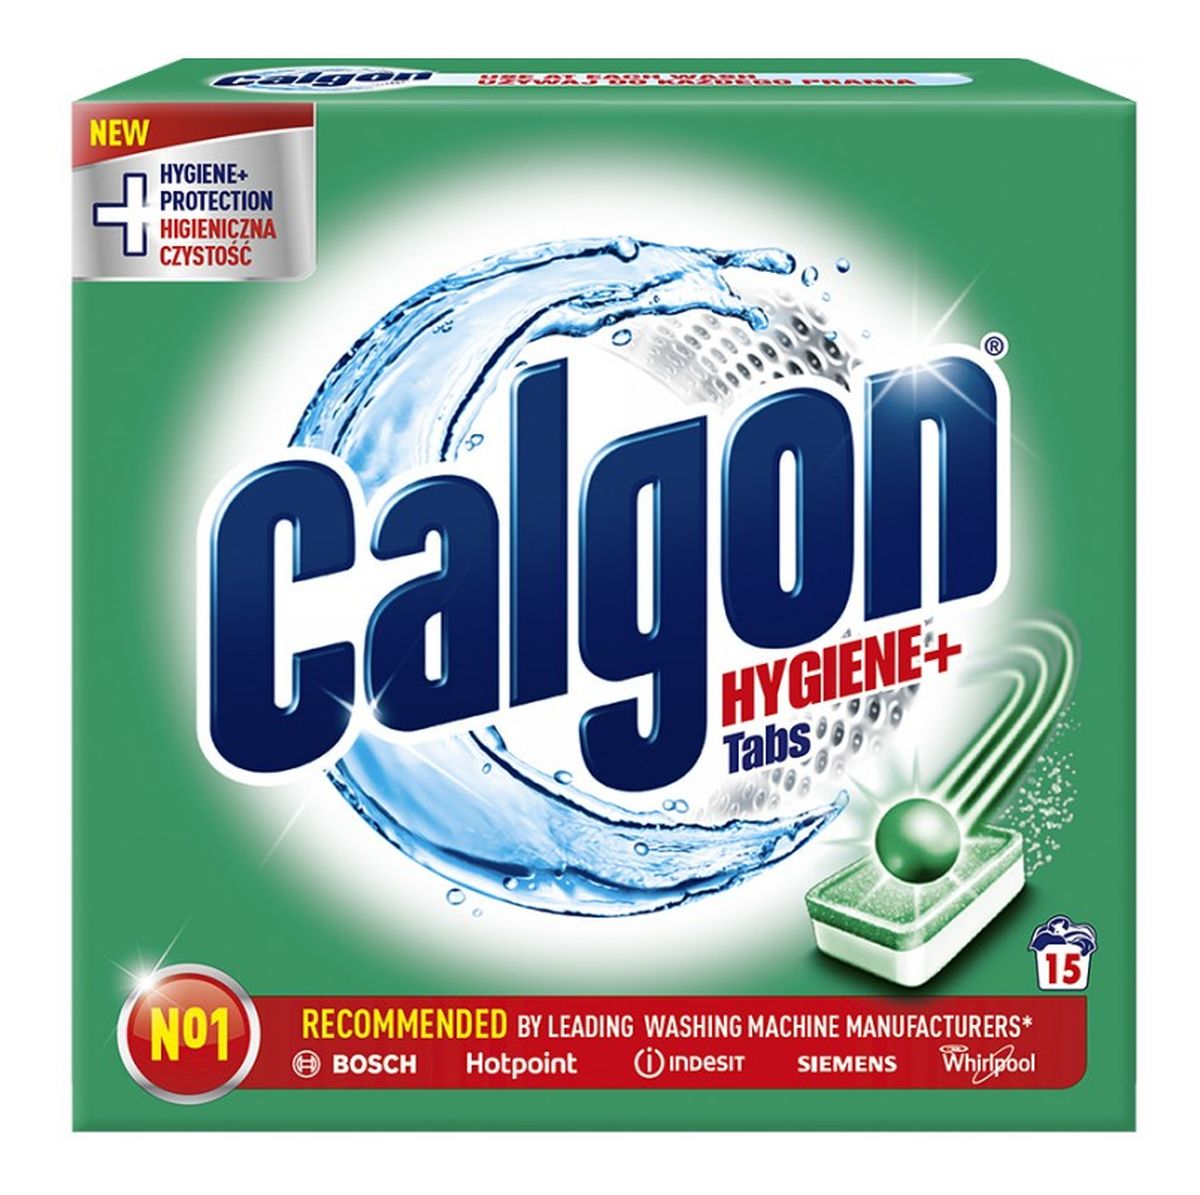 Hygiene+ Tabs odkamieniacz do pralki w tabletkach 15szt